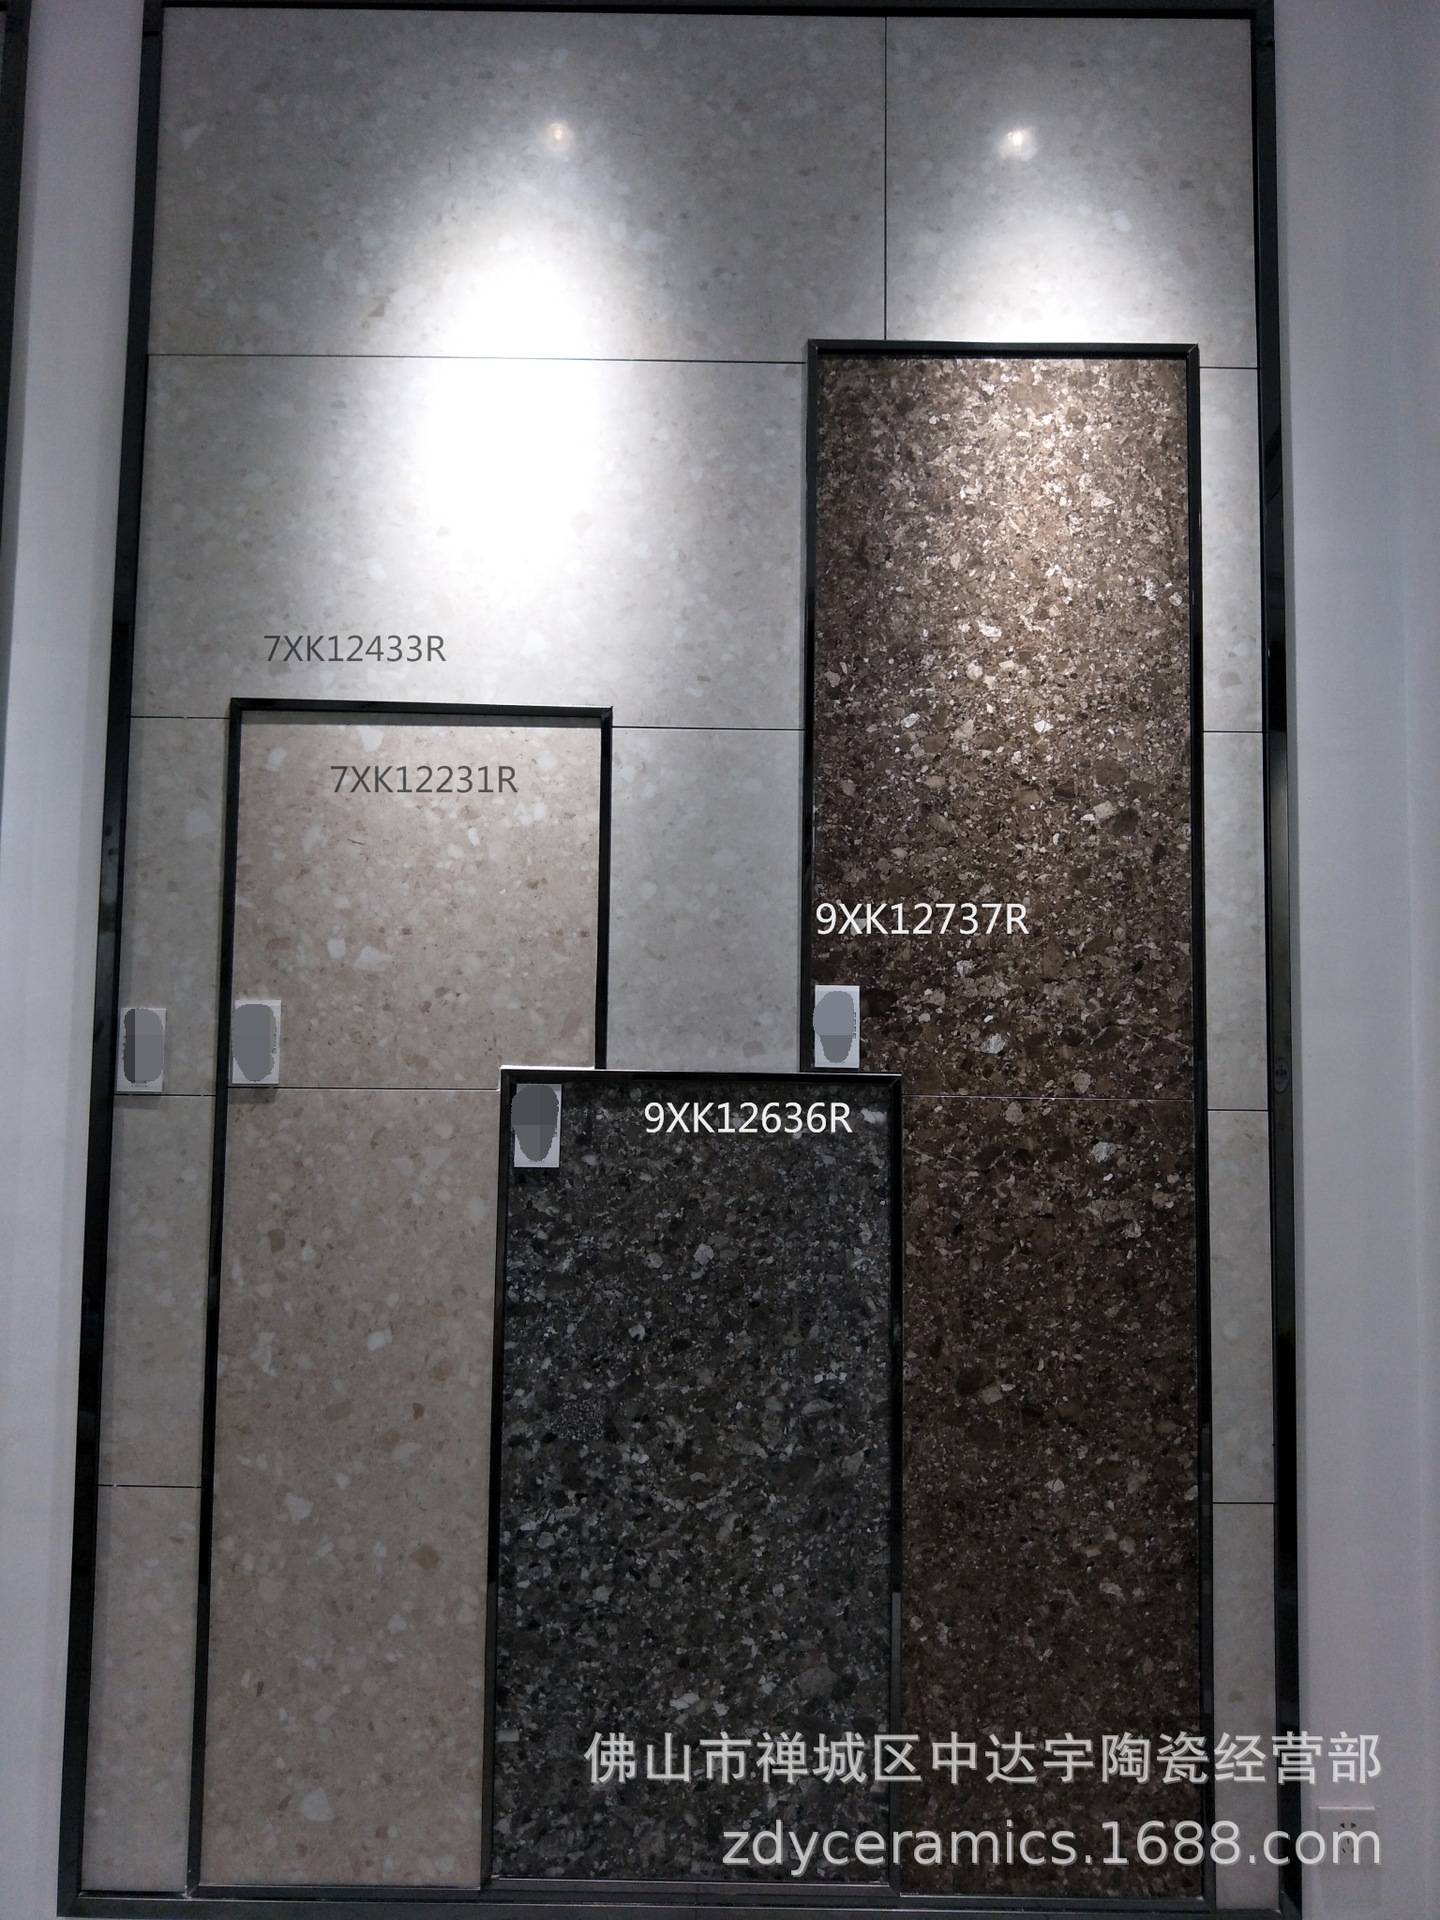 佛山600X1200仿古澳洲砂岩水磨石瓷砖一石多面砖客厅卫生间地面砖示例图11